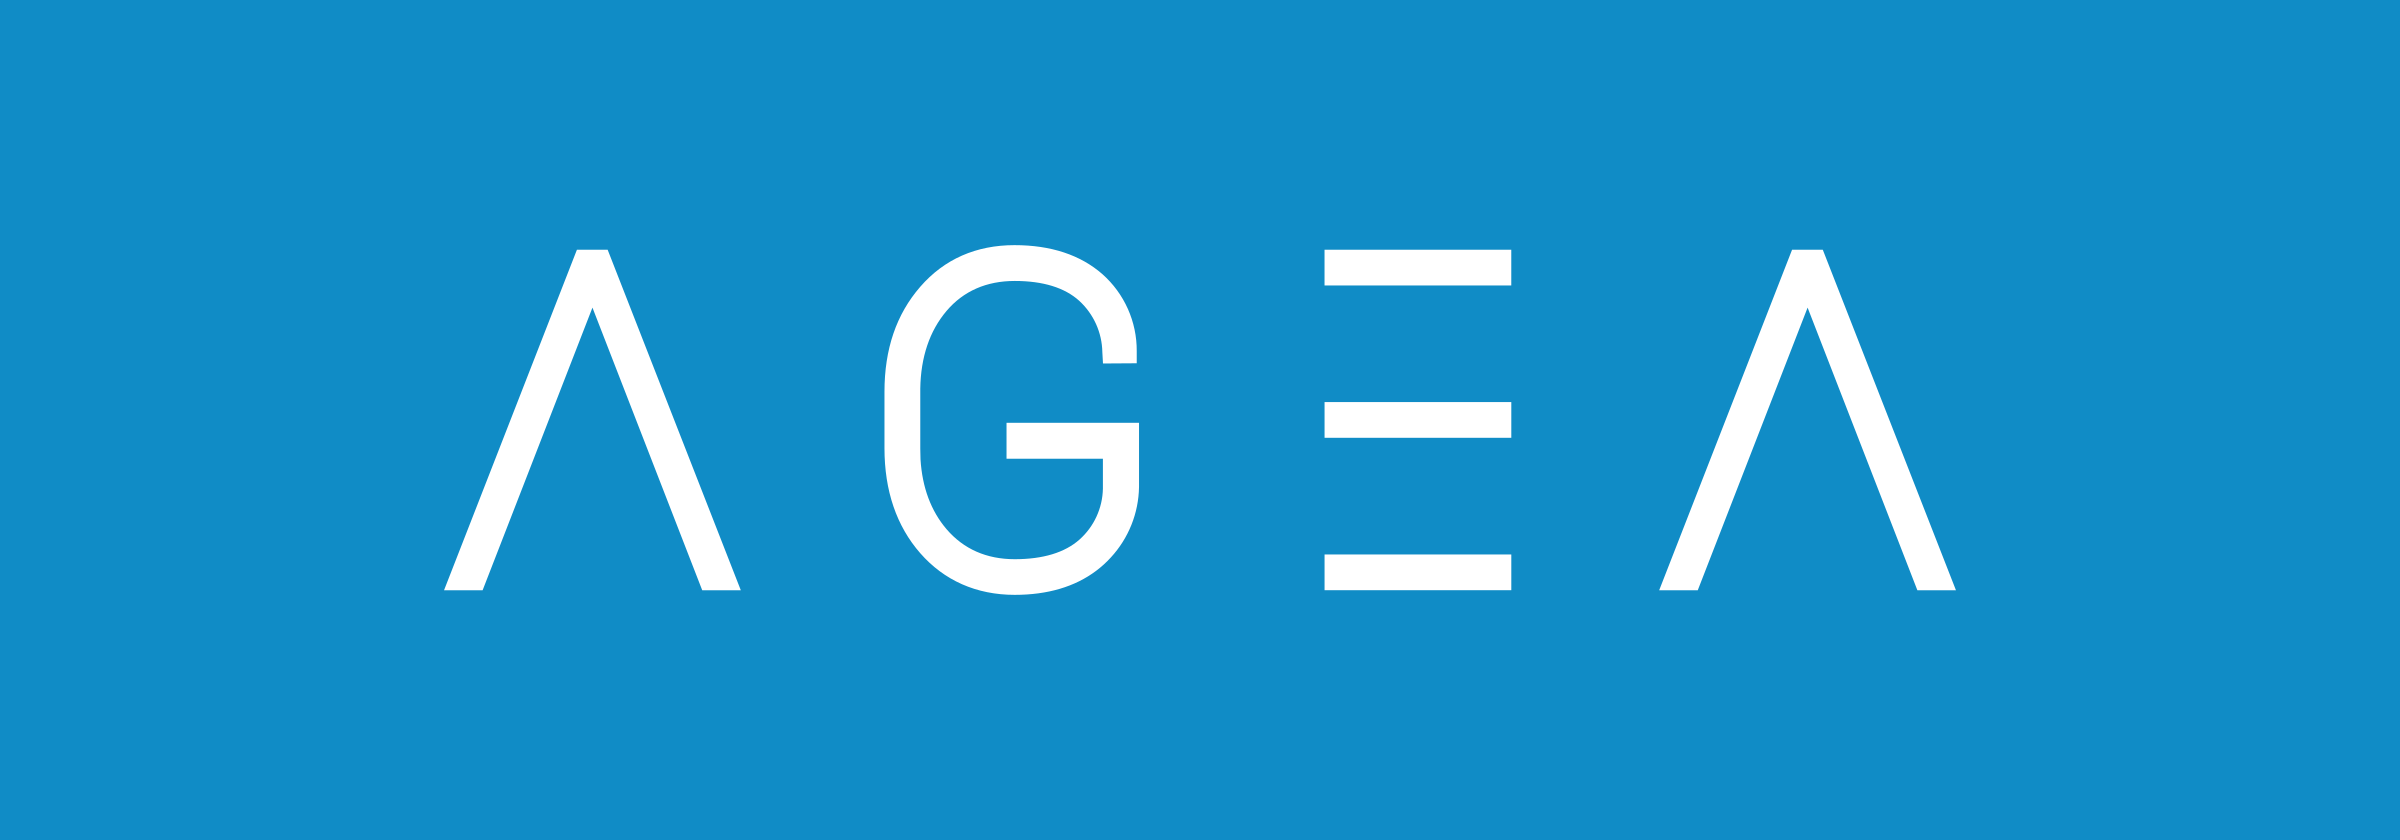 AGEA logo